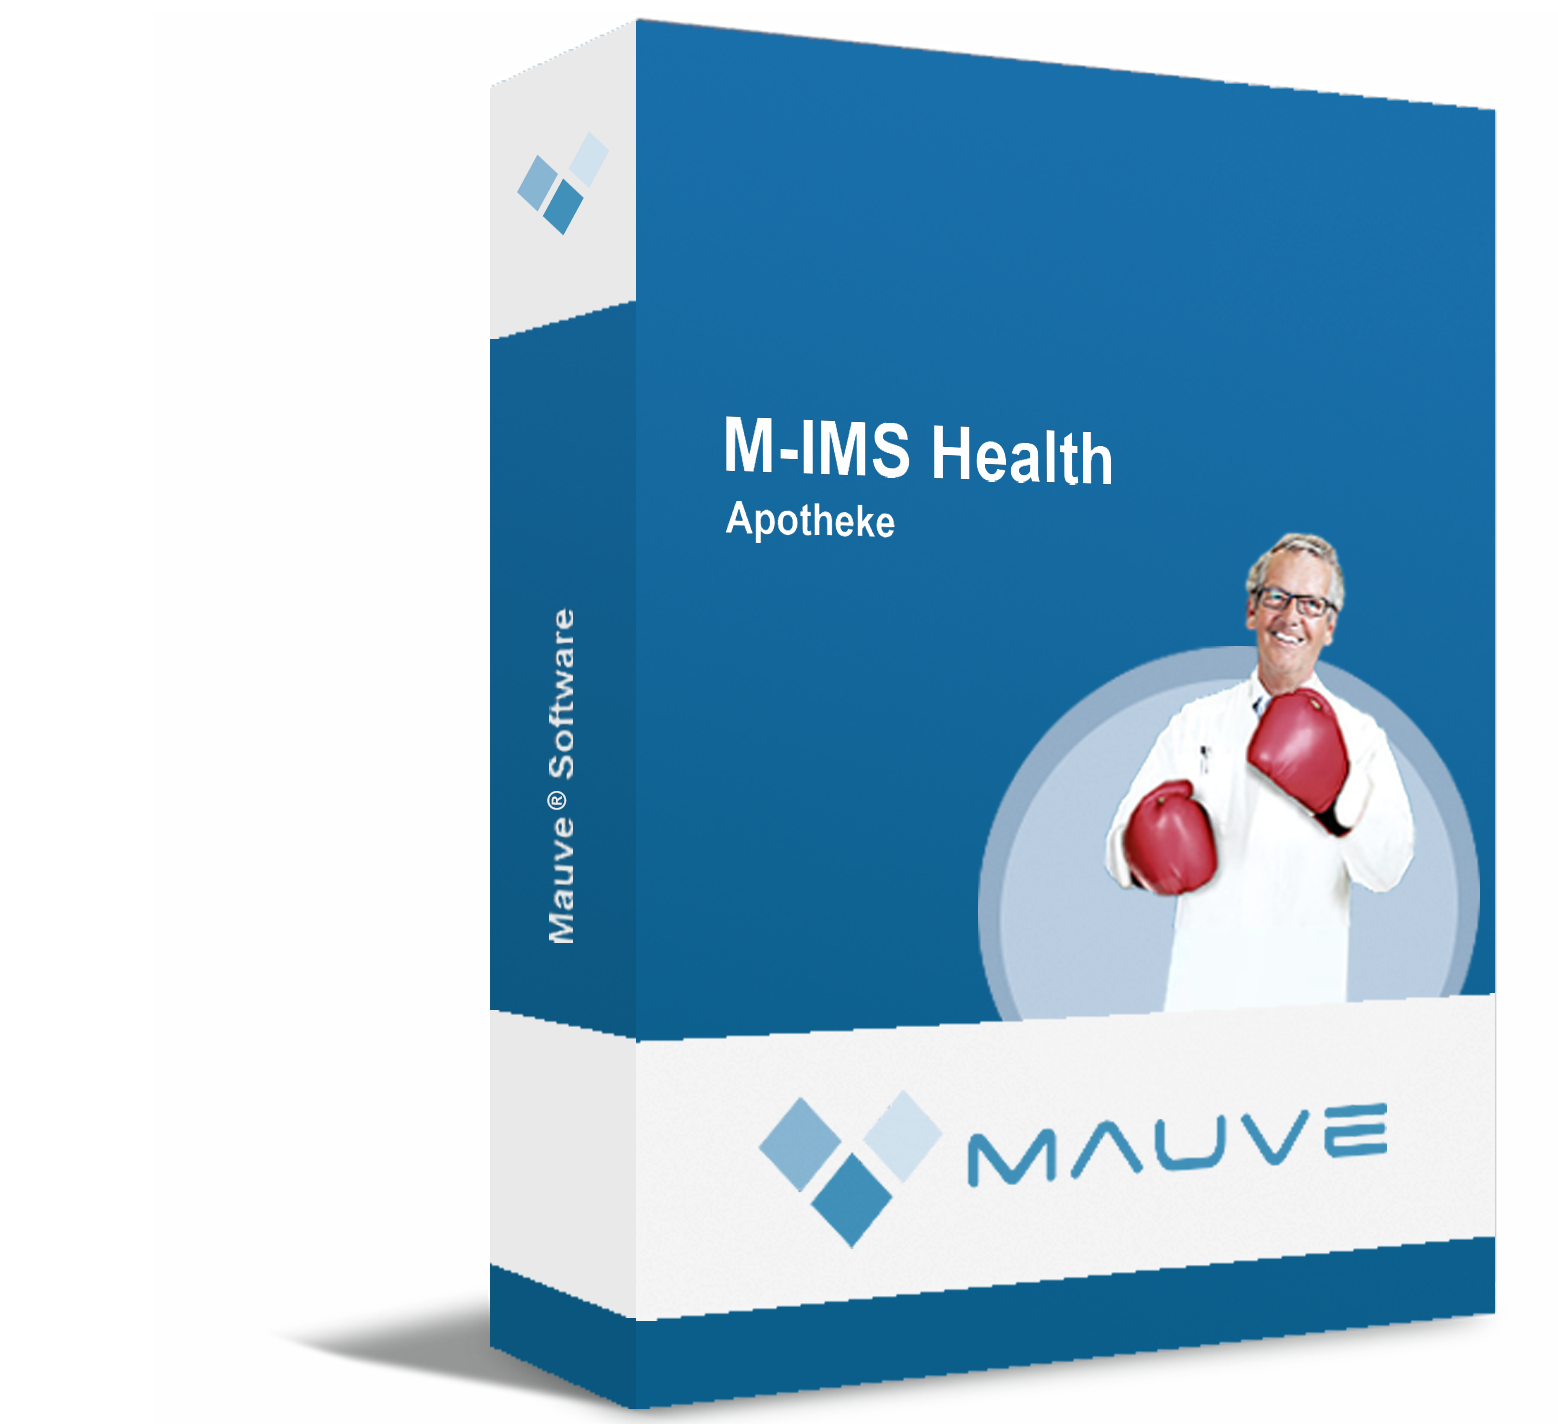 M-IMS Health